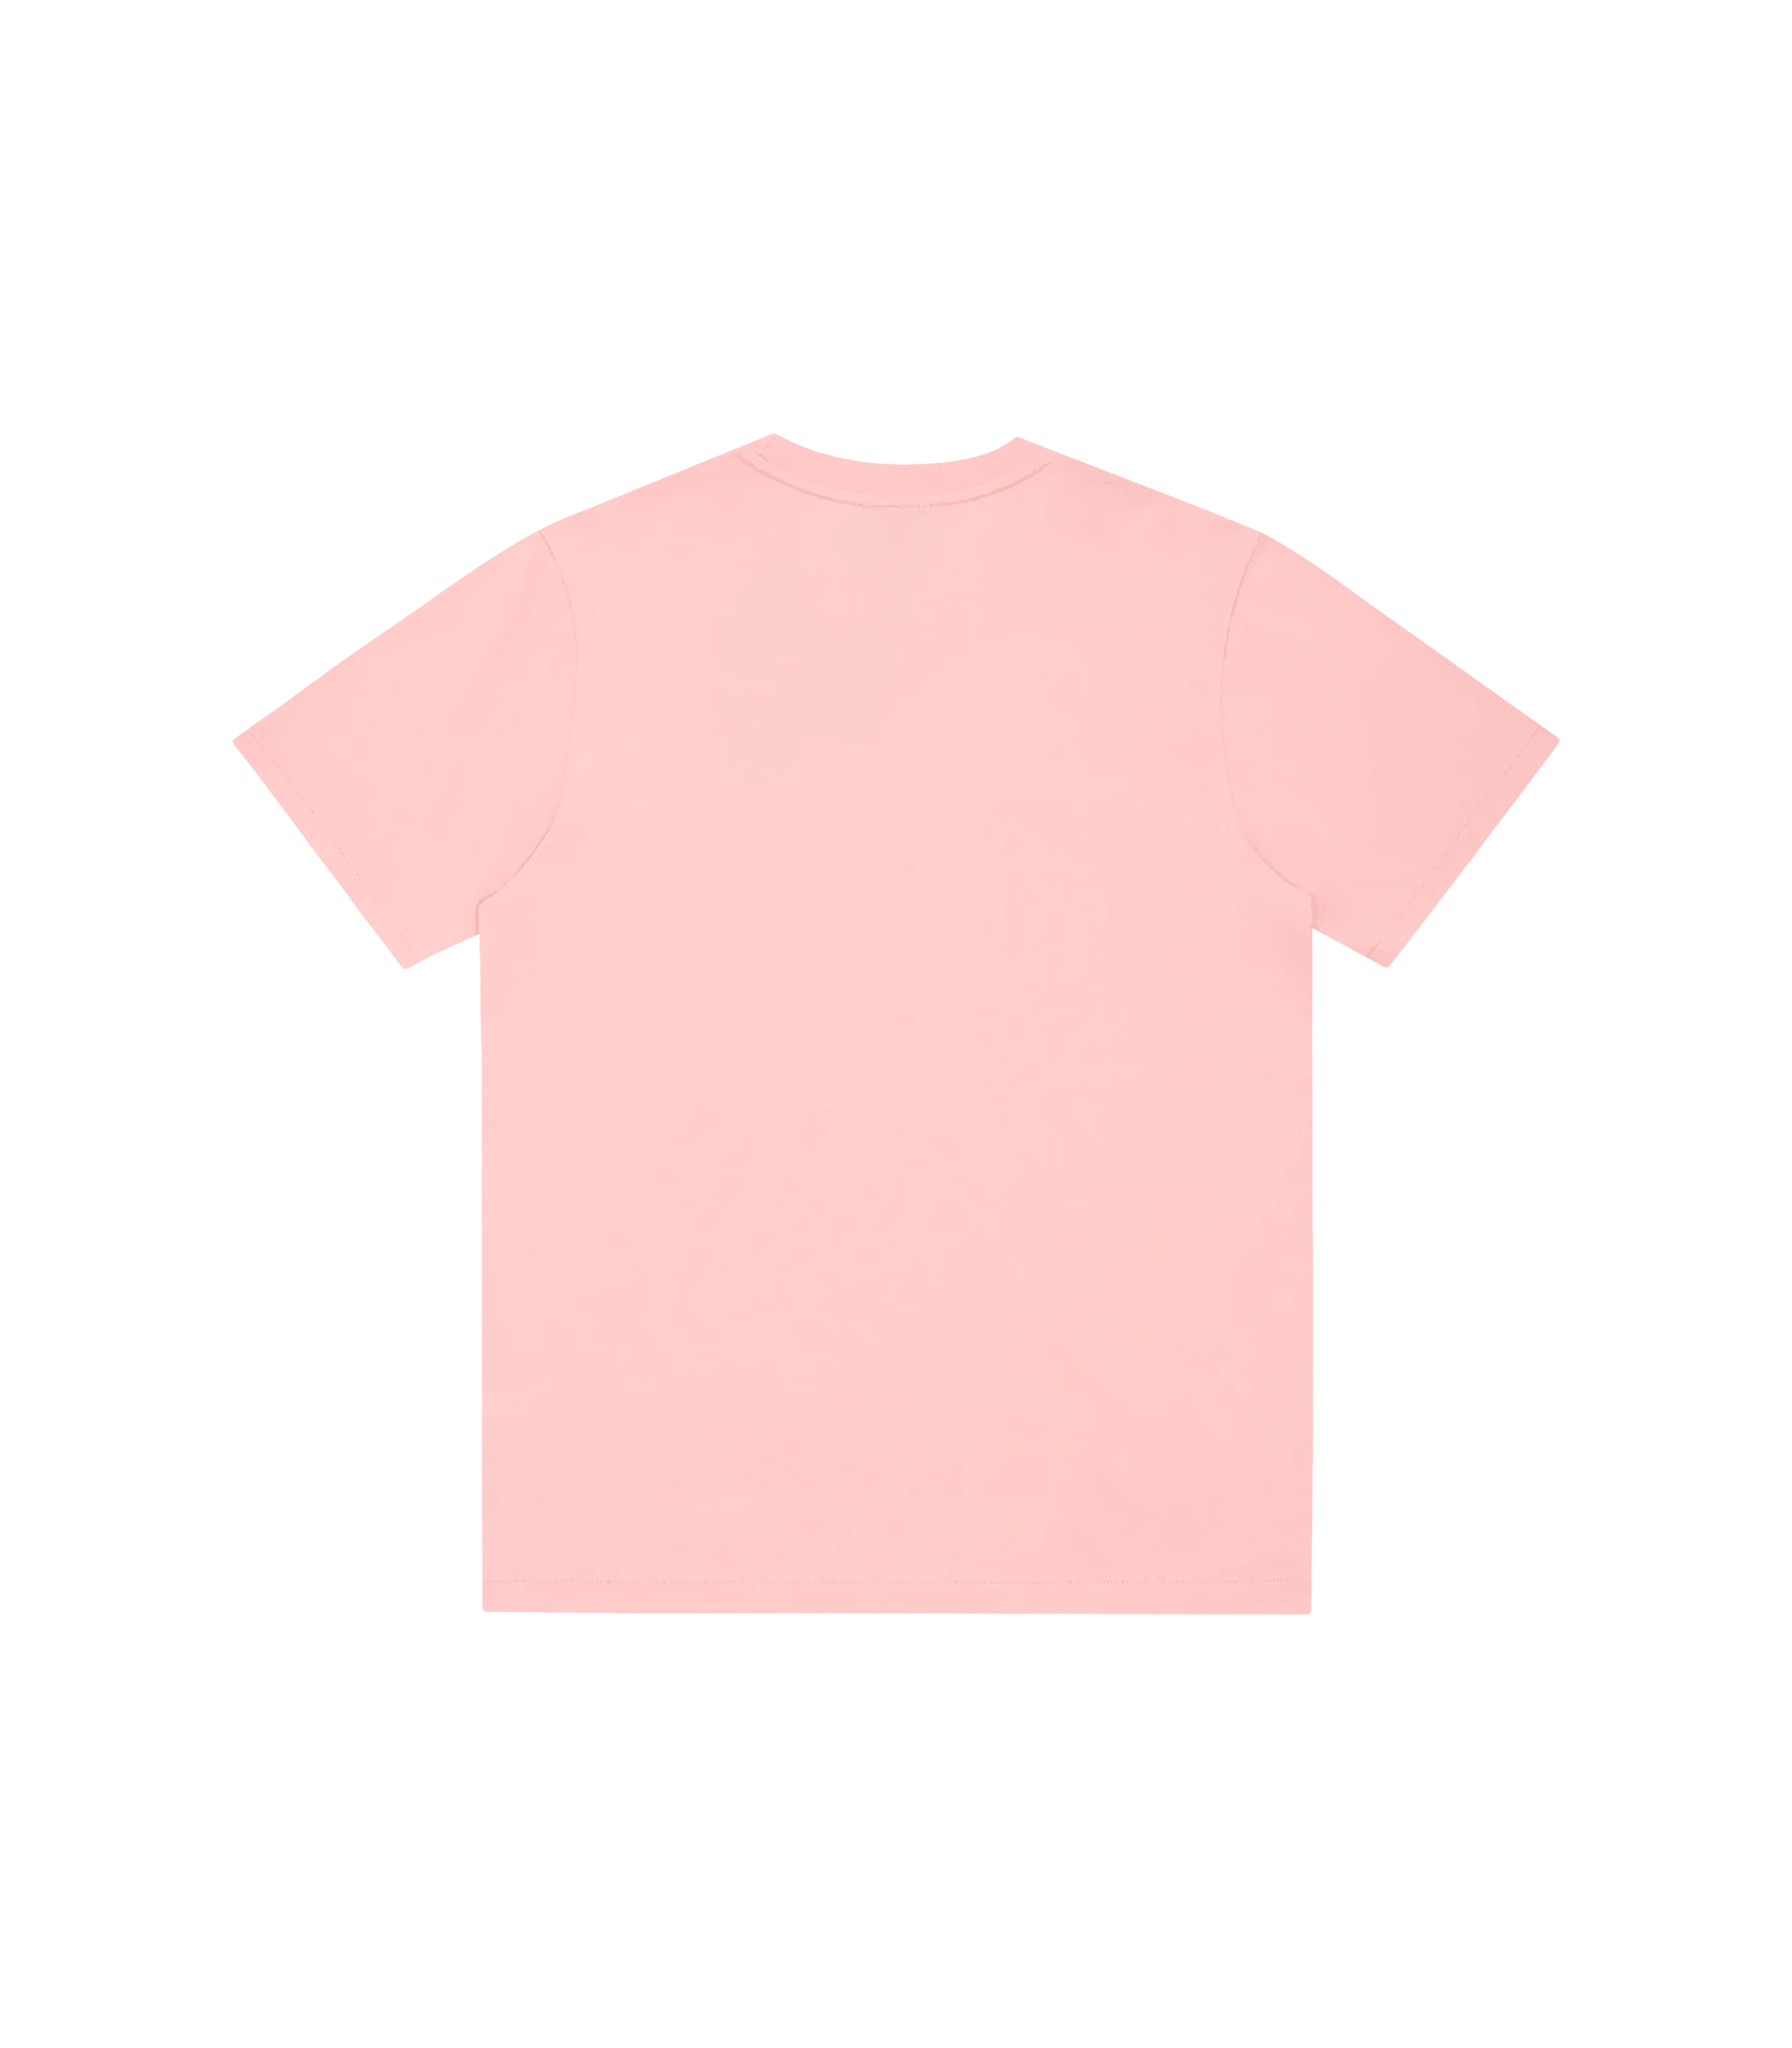 Zorro Stuff T-Shirts Inspiration T-Shirt Pink